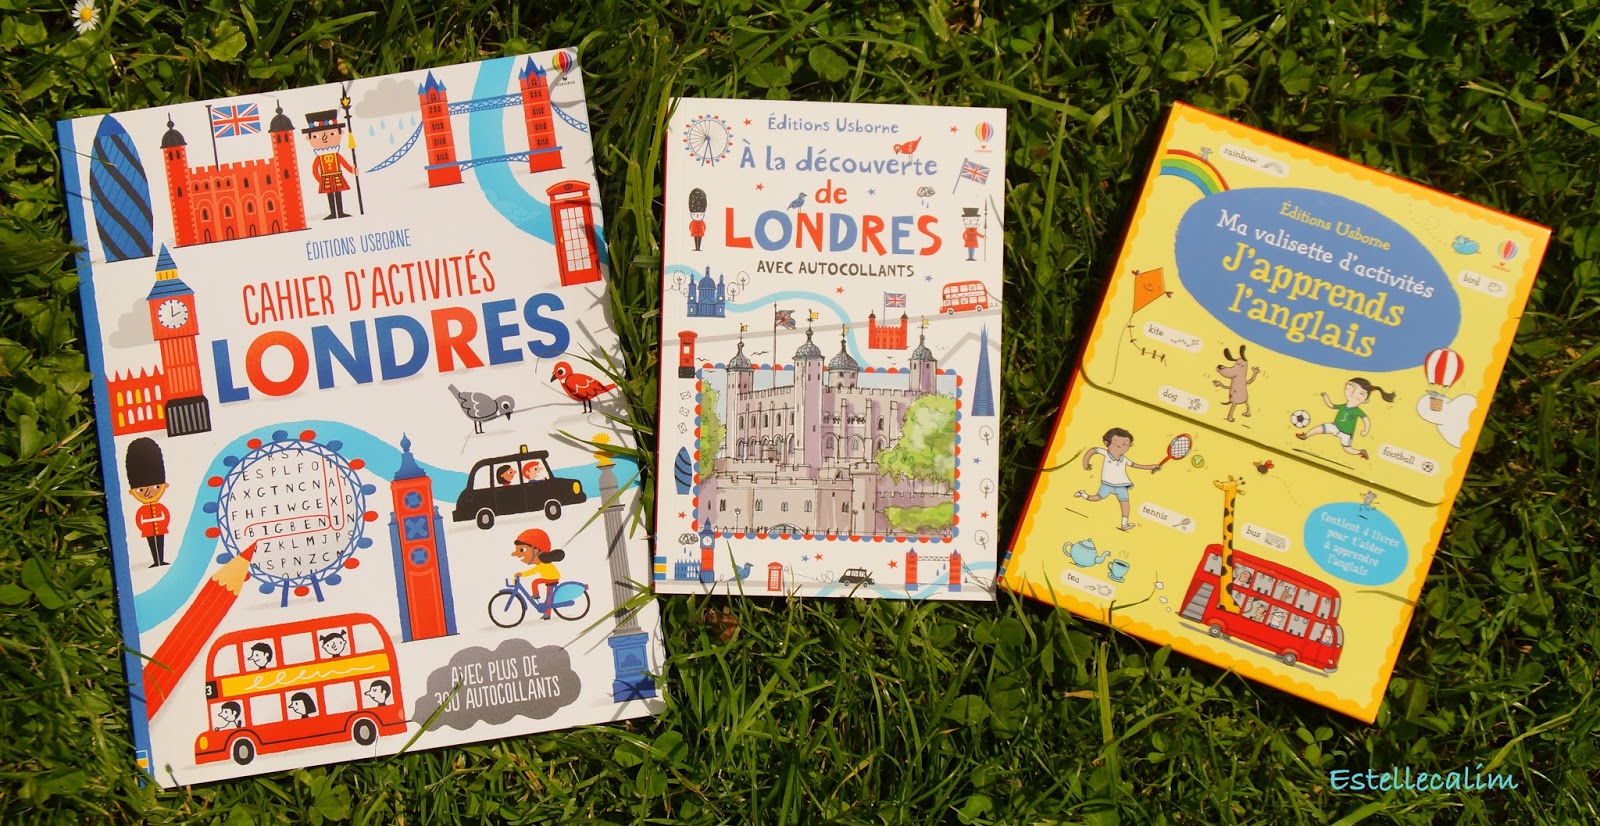 Lire, relire, ne pas lire: Découvrir Londres et apprendre l'anglais [ Livres pour enfants]